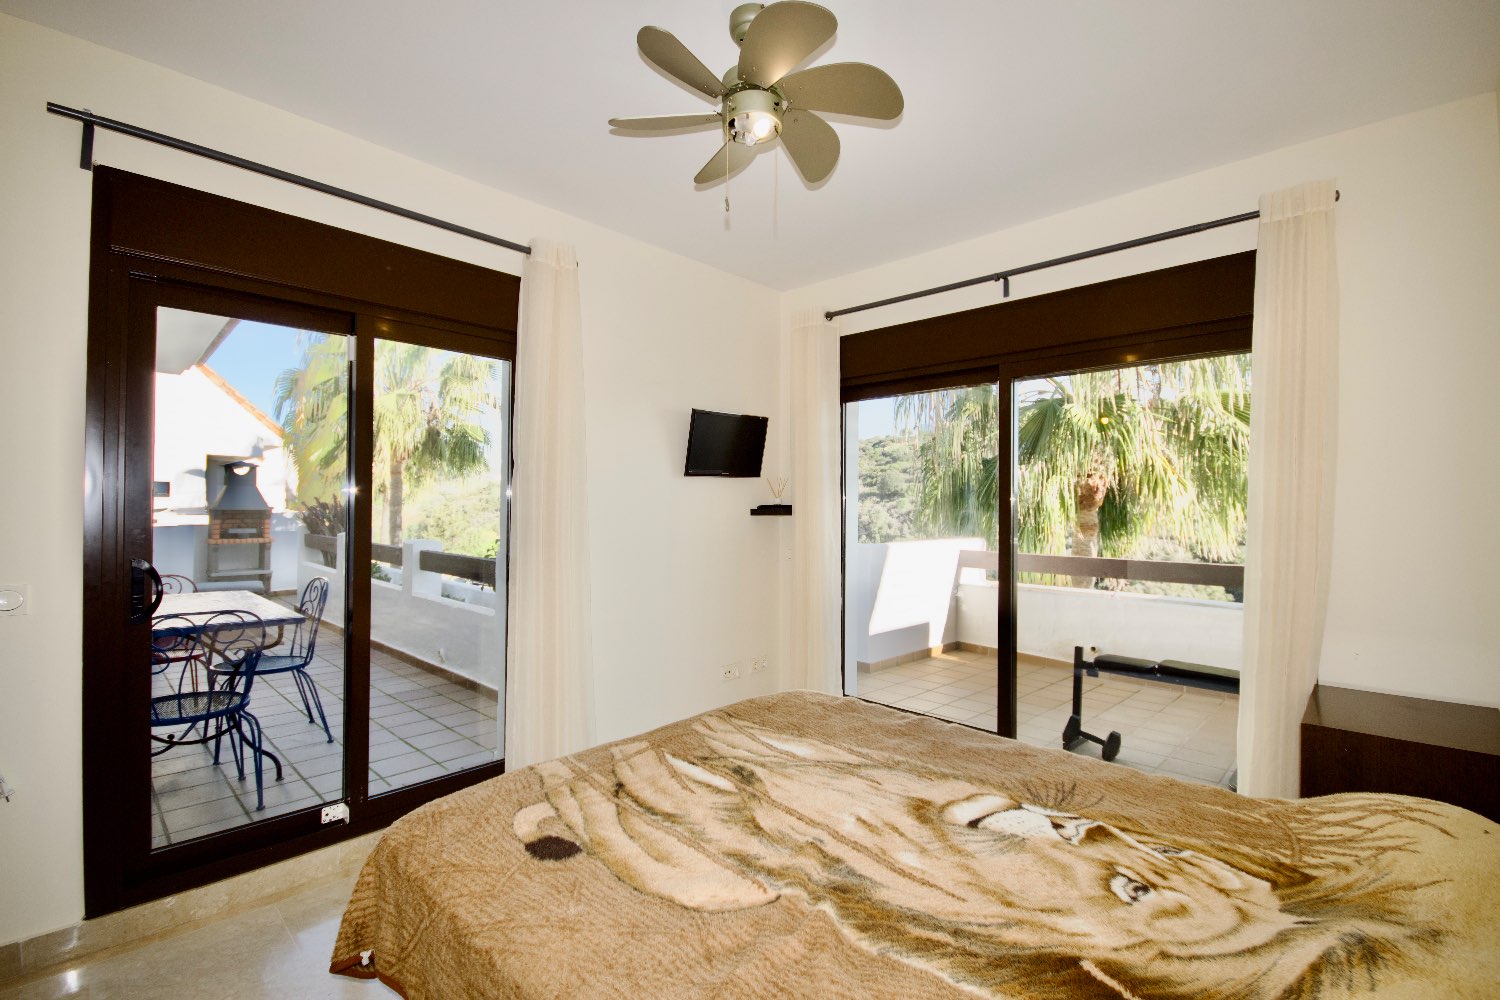 Grand appartement dans le village de Duquesa - Manilva - Malaga - Costa del Sol